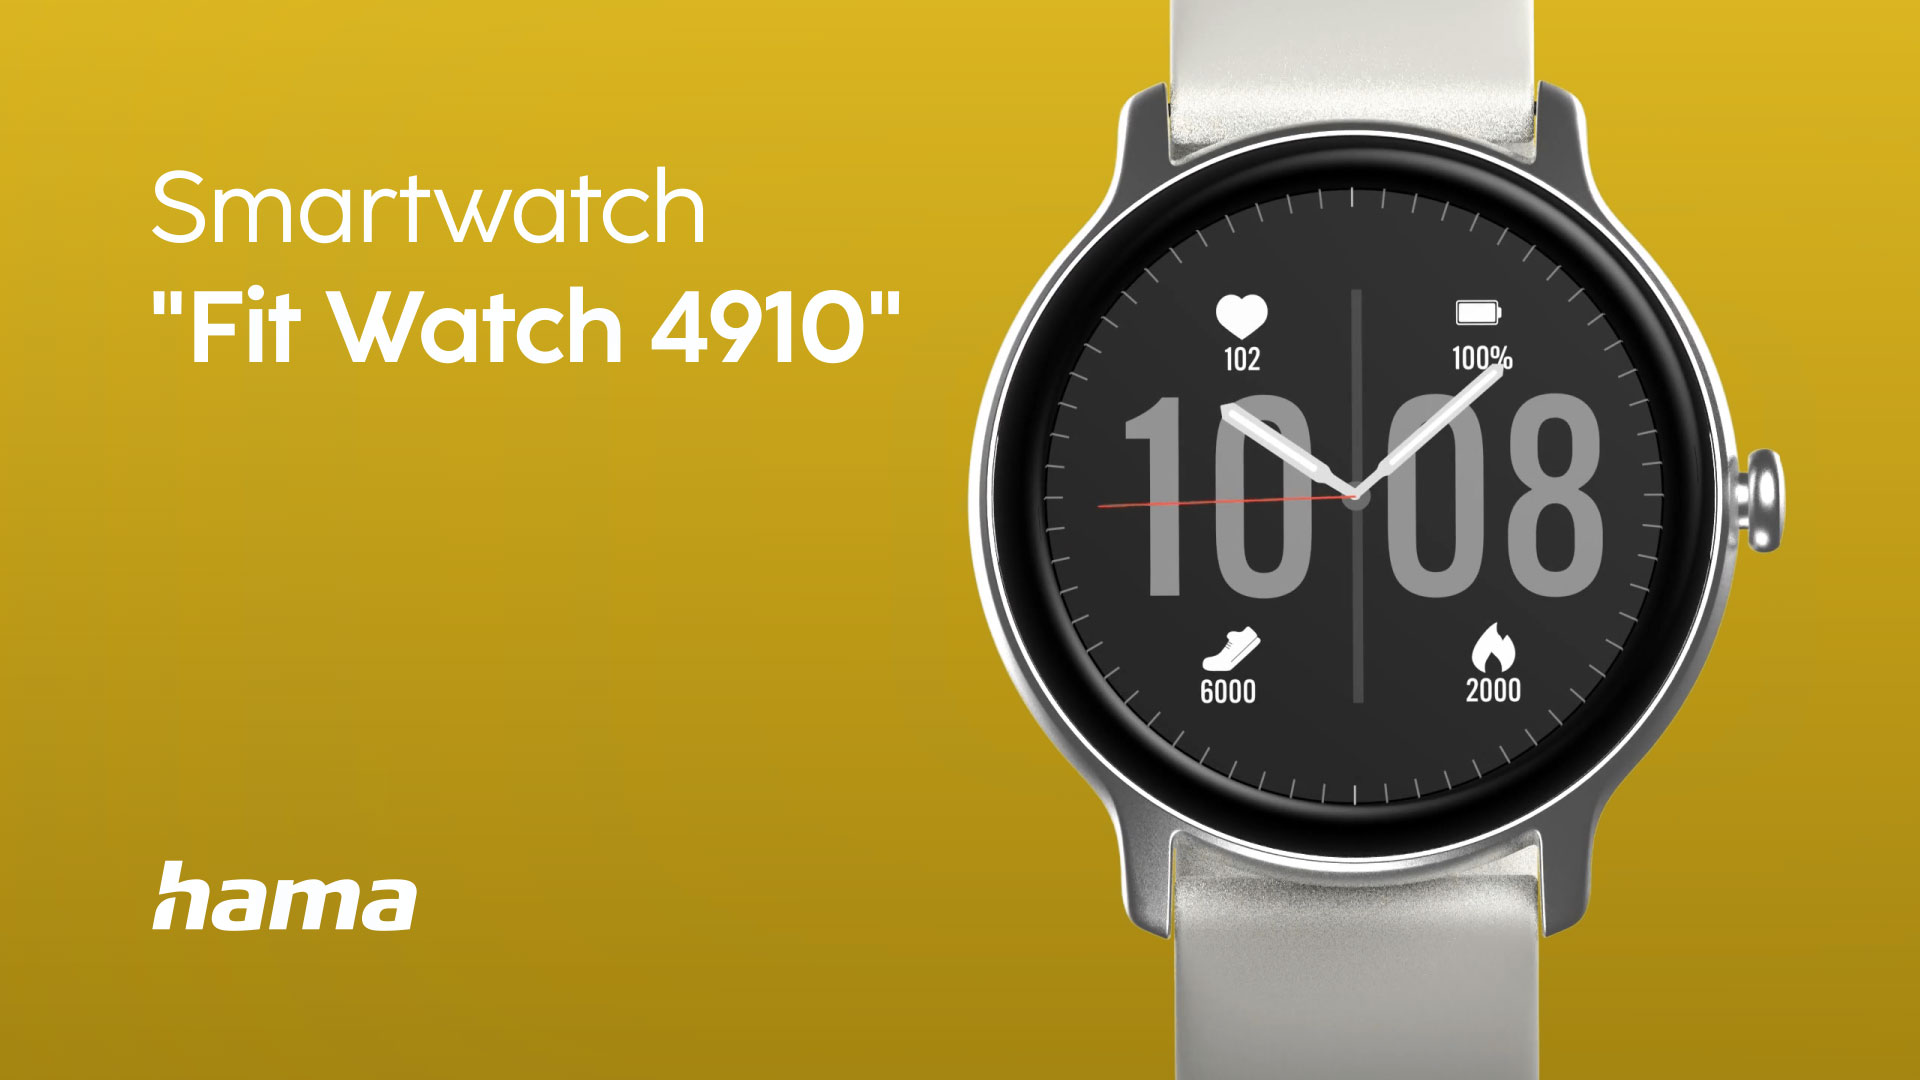 Hama Smart Watch "Fit Watch 4910“